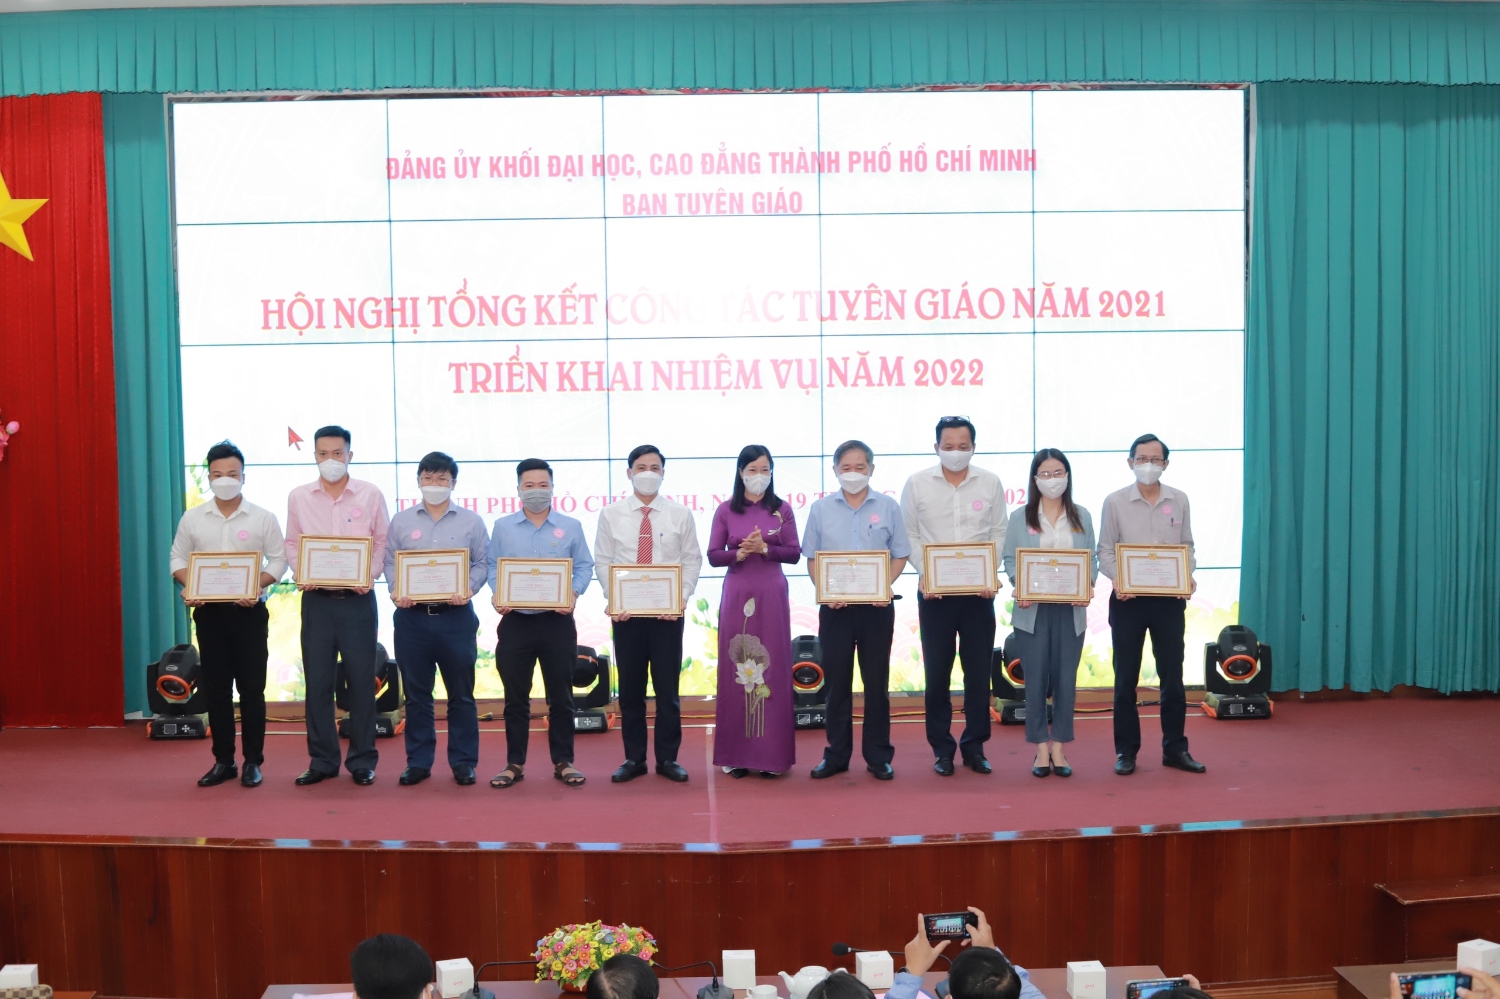 Đồng chí Nguyễn Thị Là – Phó Bí thư Thường trực Đảng ủy Khối chúc mừng các tập thể hoàn thành xuất sắc công tác tuyên giáo năm 2021